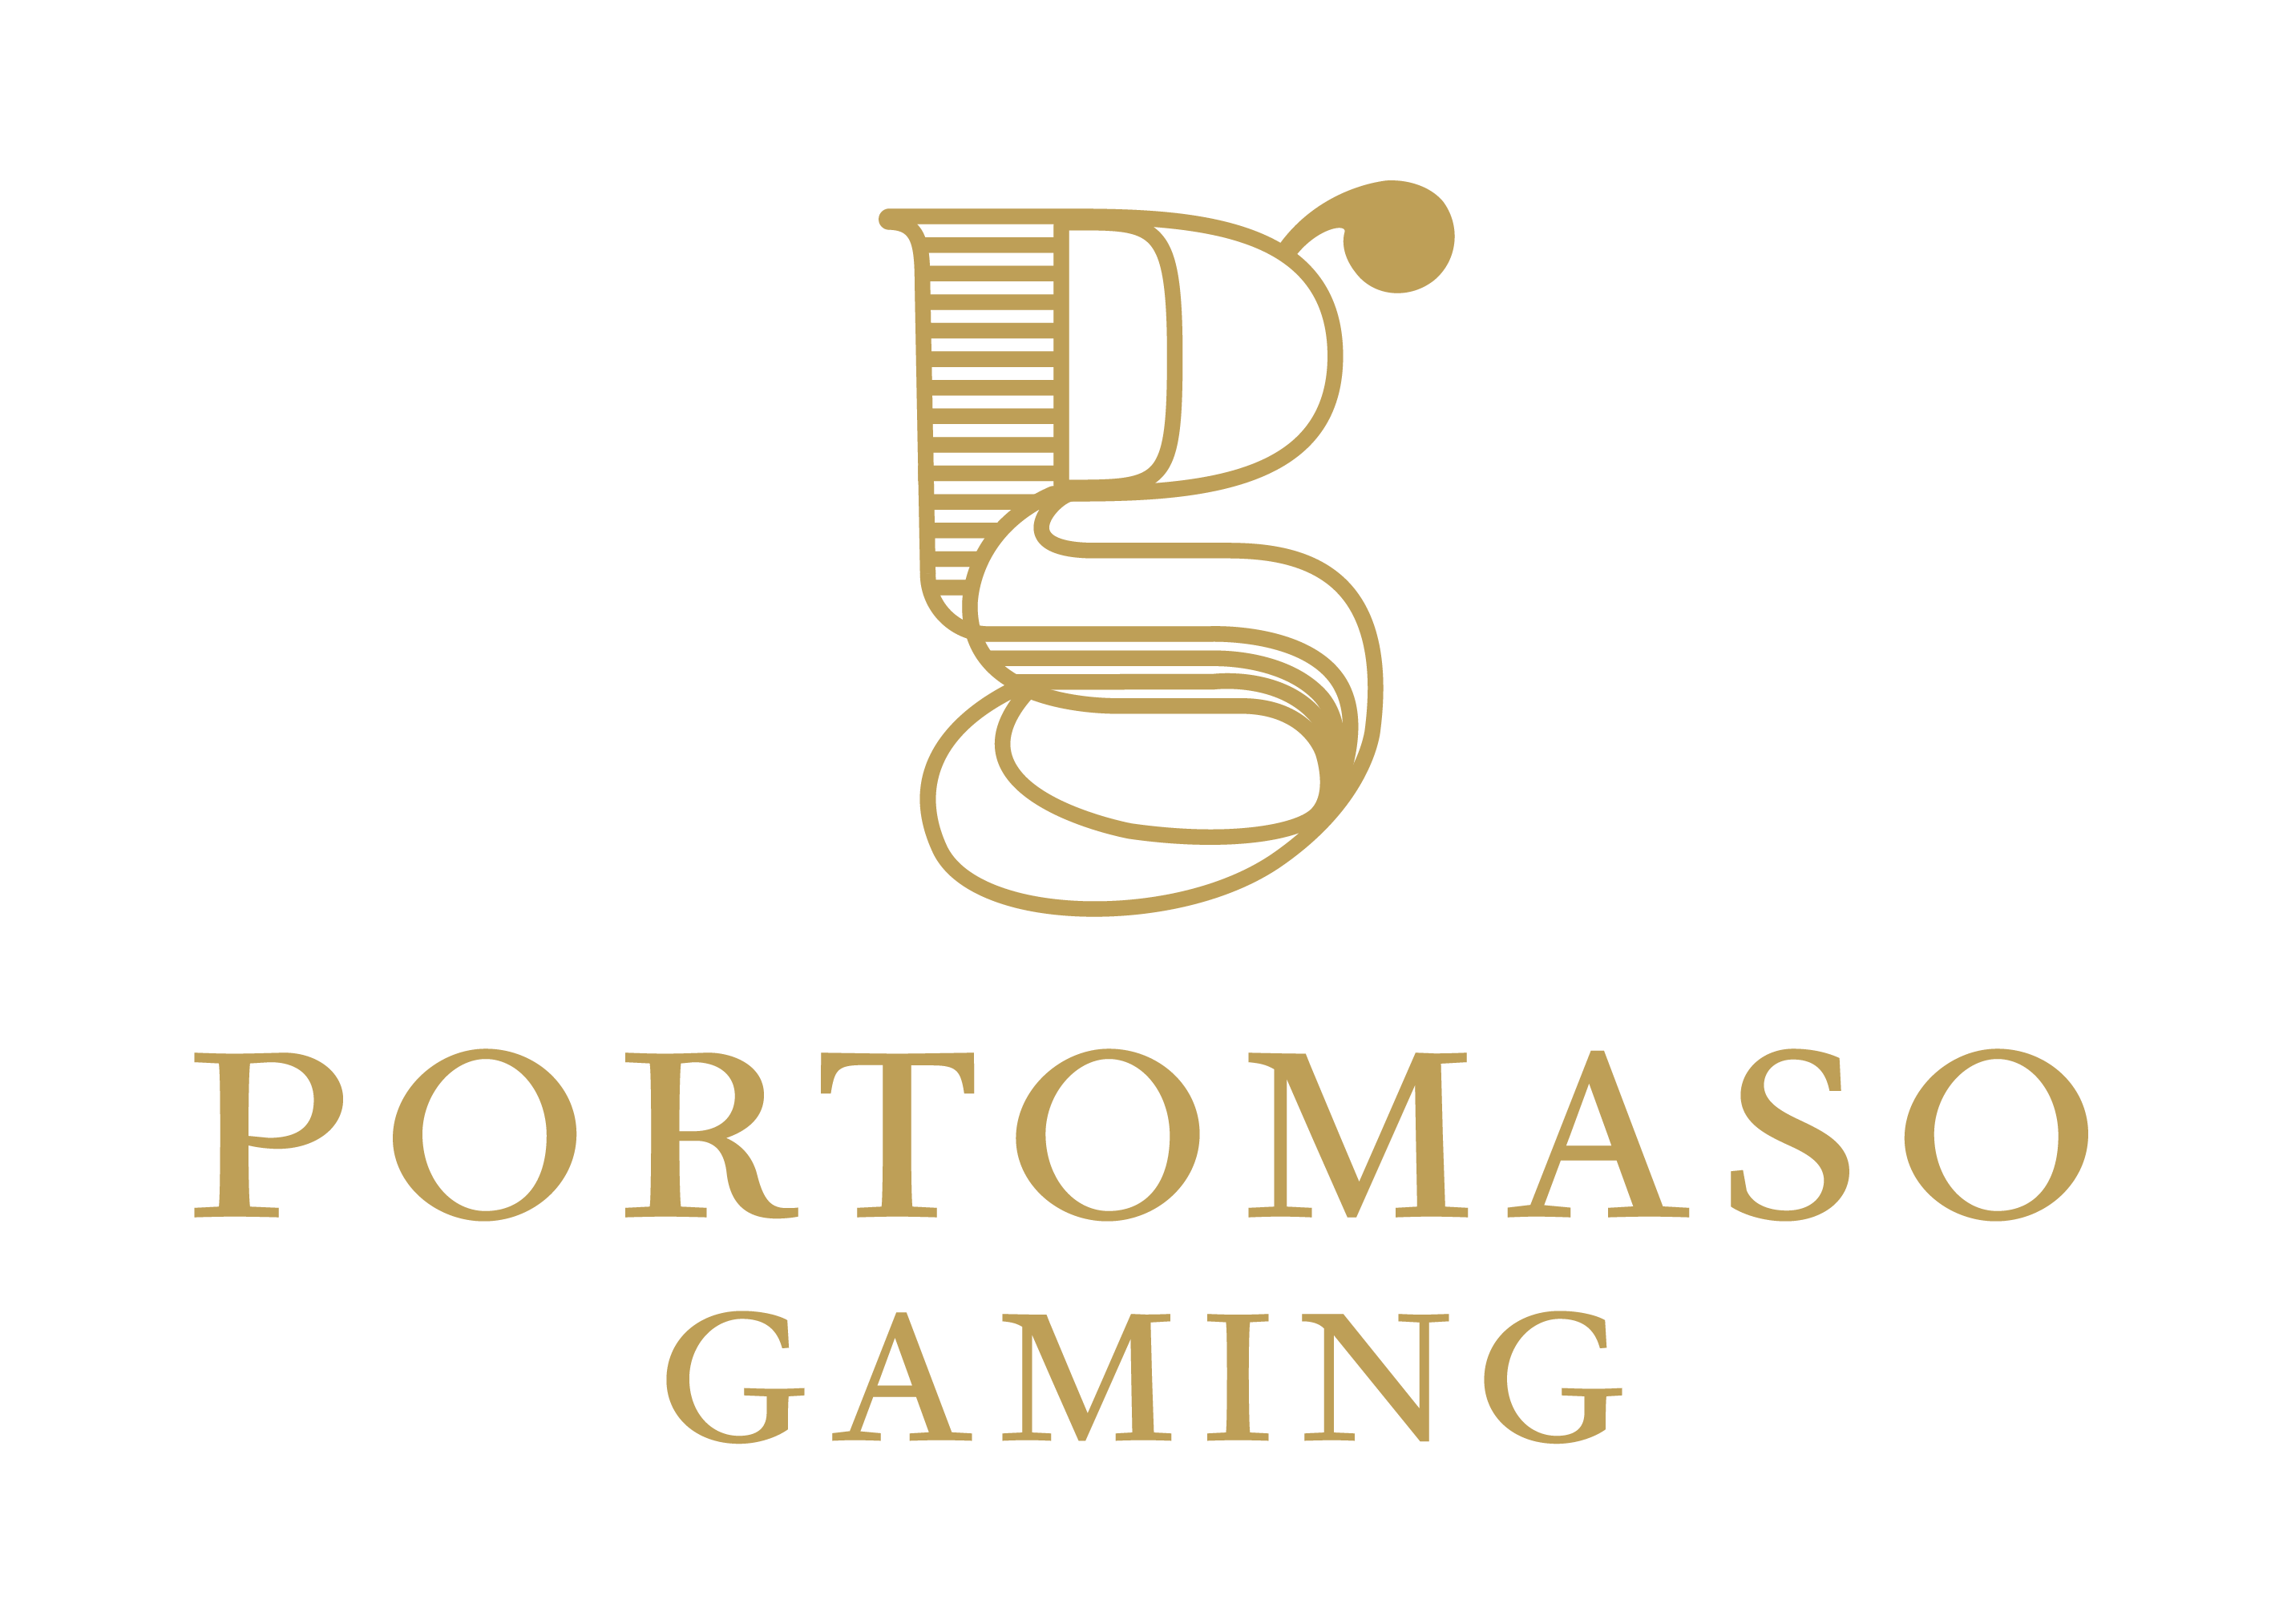 Portomaso Gaming games